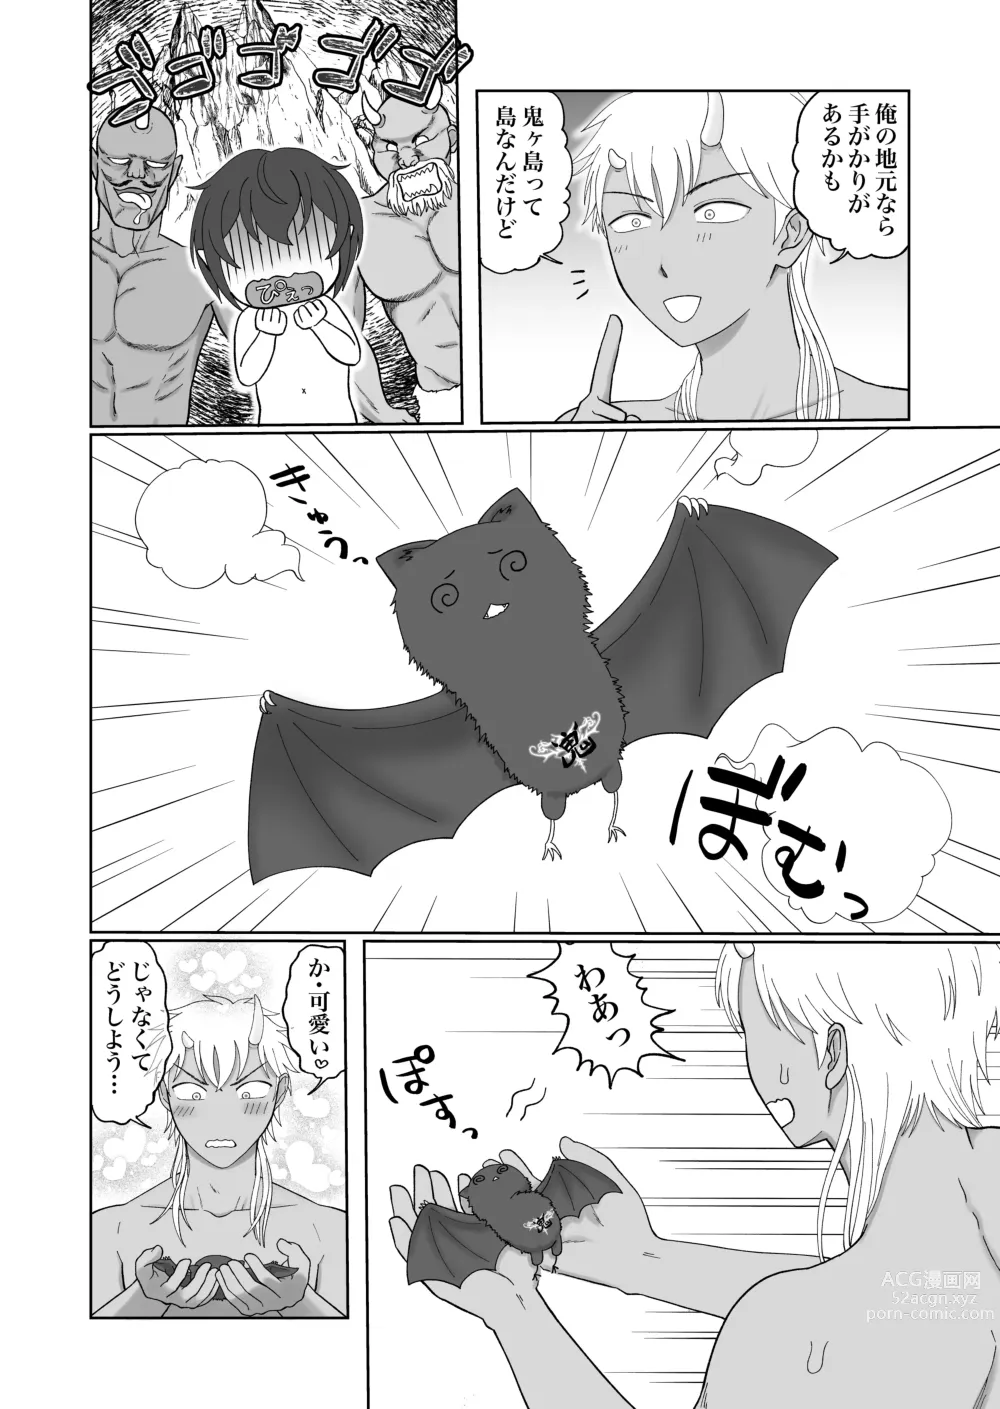 Page 42 of doujinshi Hajimemashite! Inma-kun - Nice to meet you Succubus boy